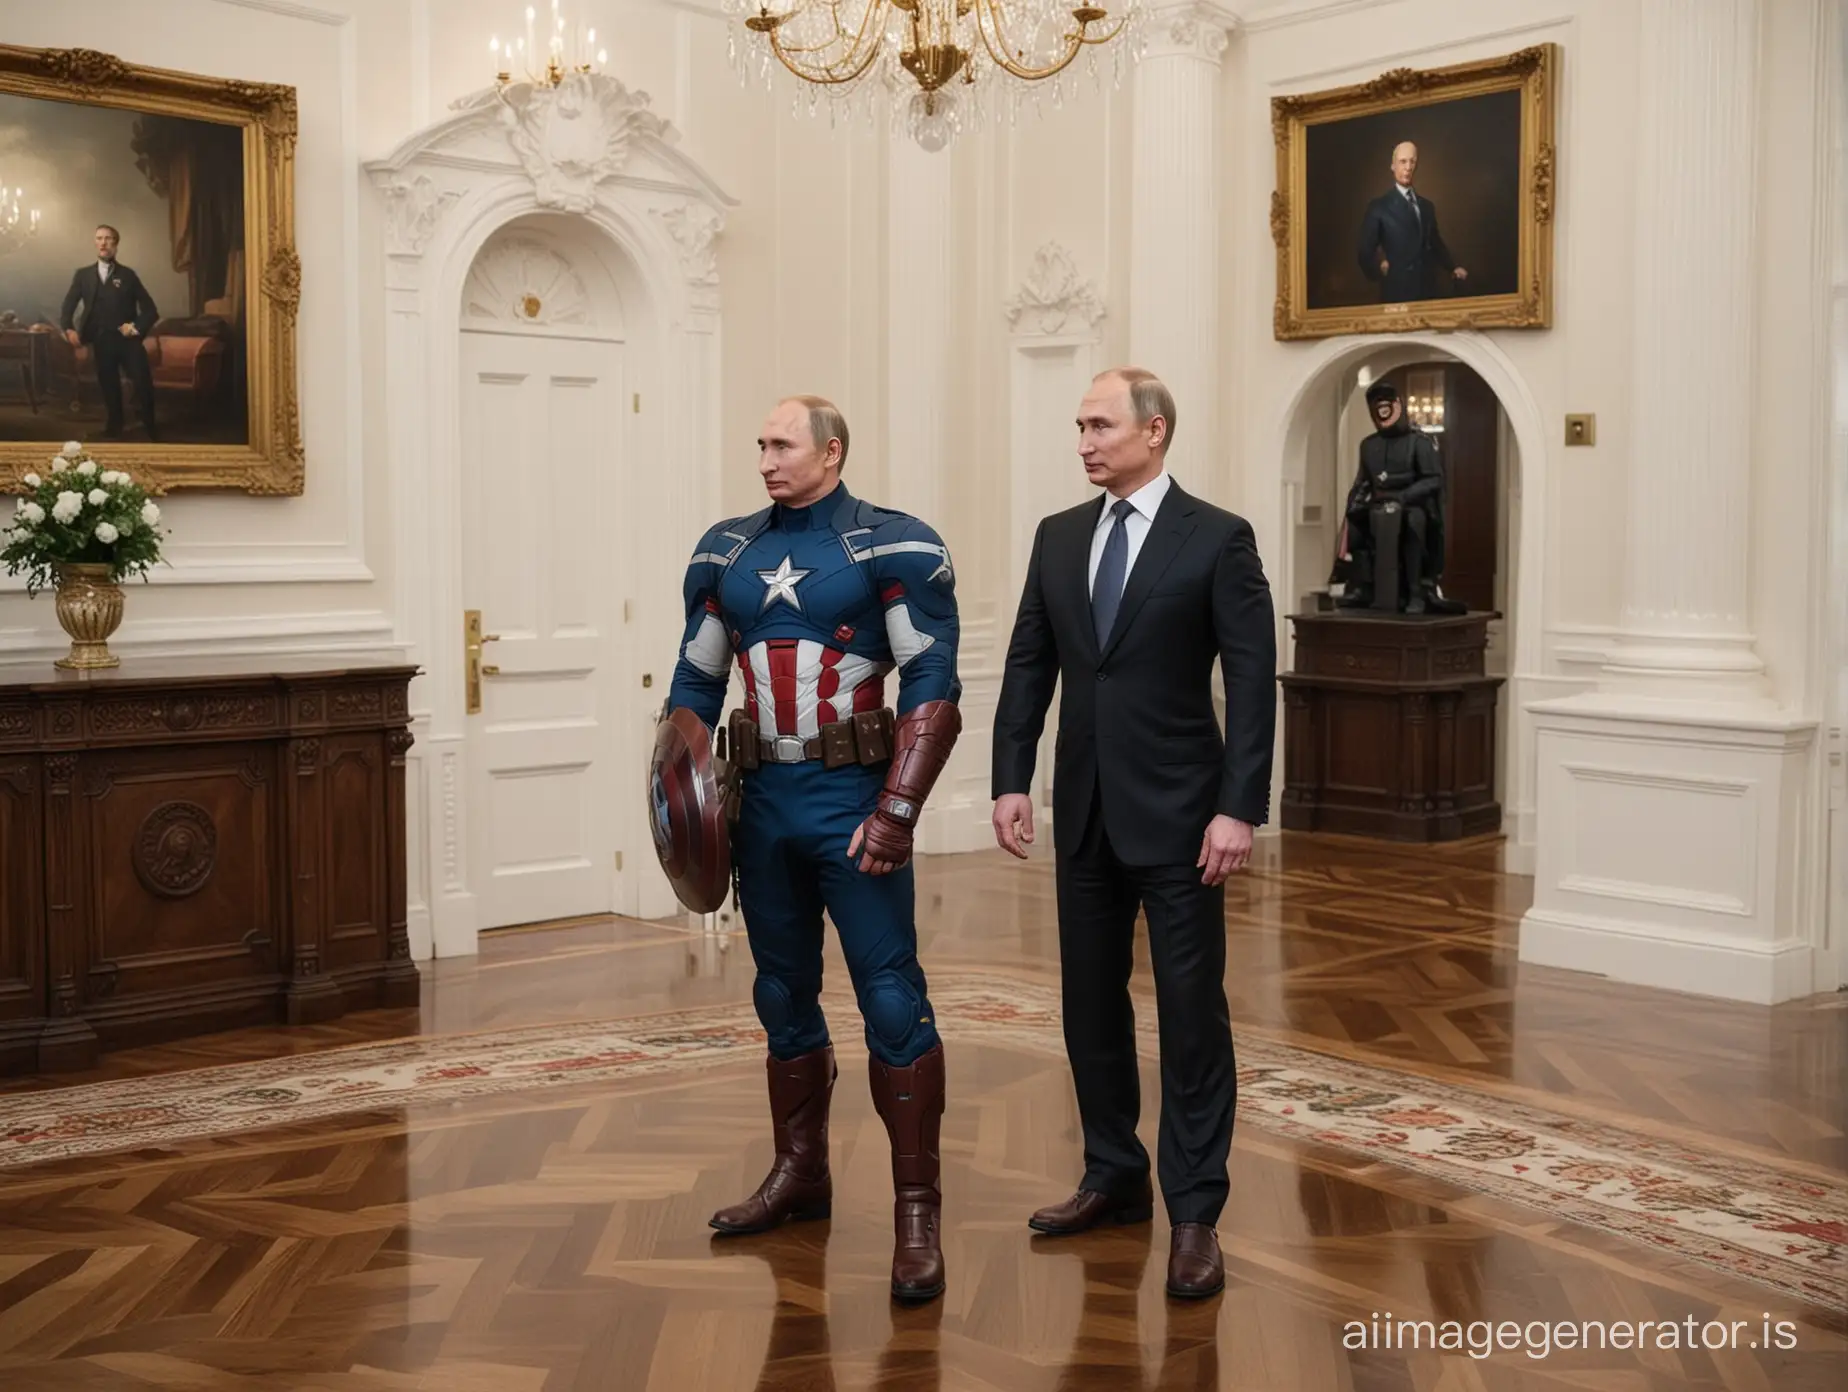 Vladimir-Putin-Impersonates-Captain-America-in-White-House-Visit